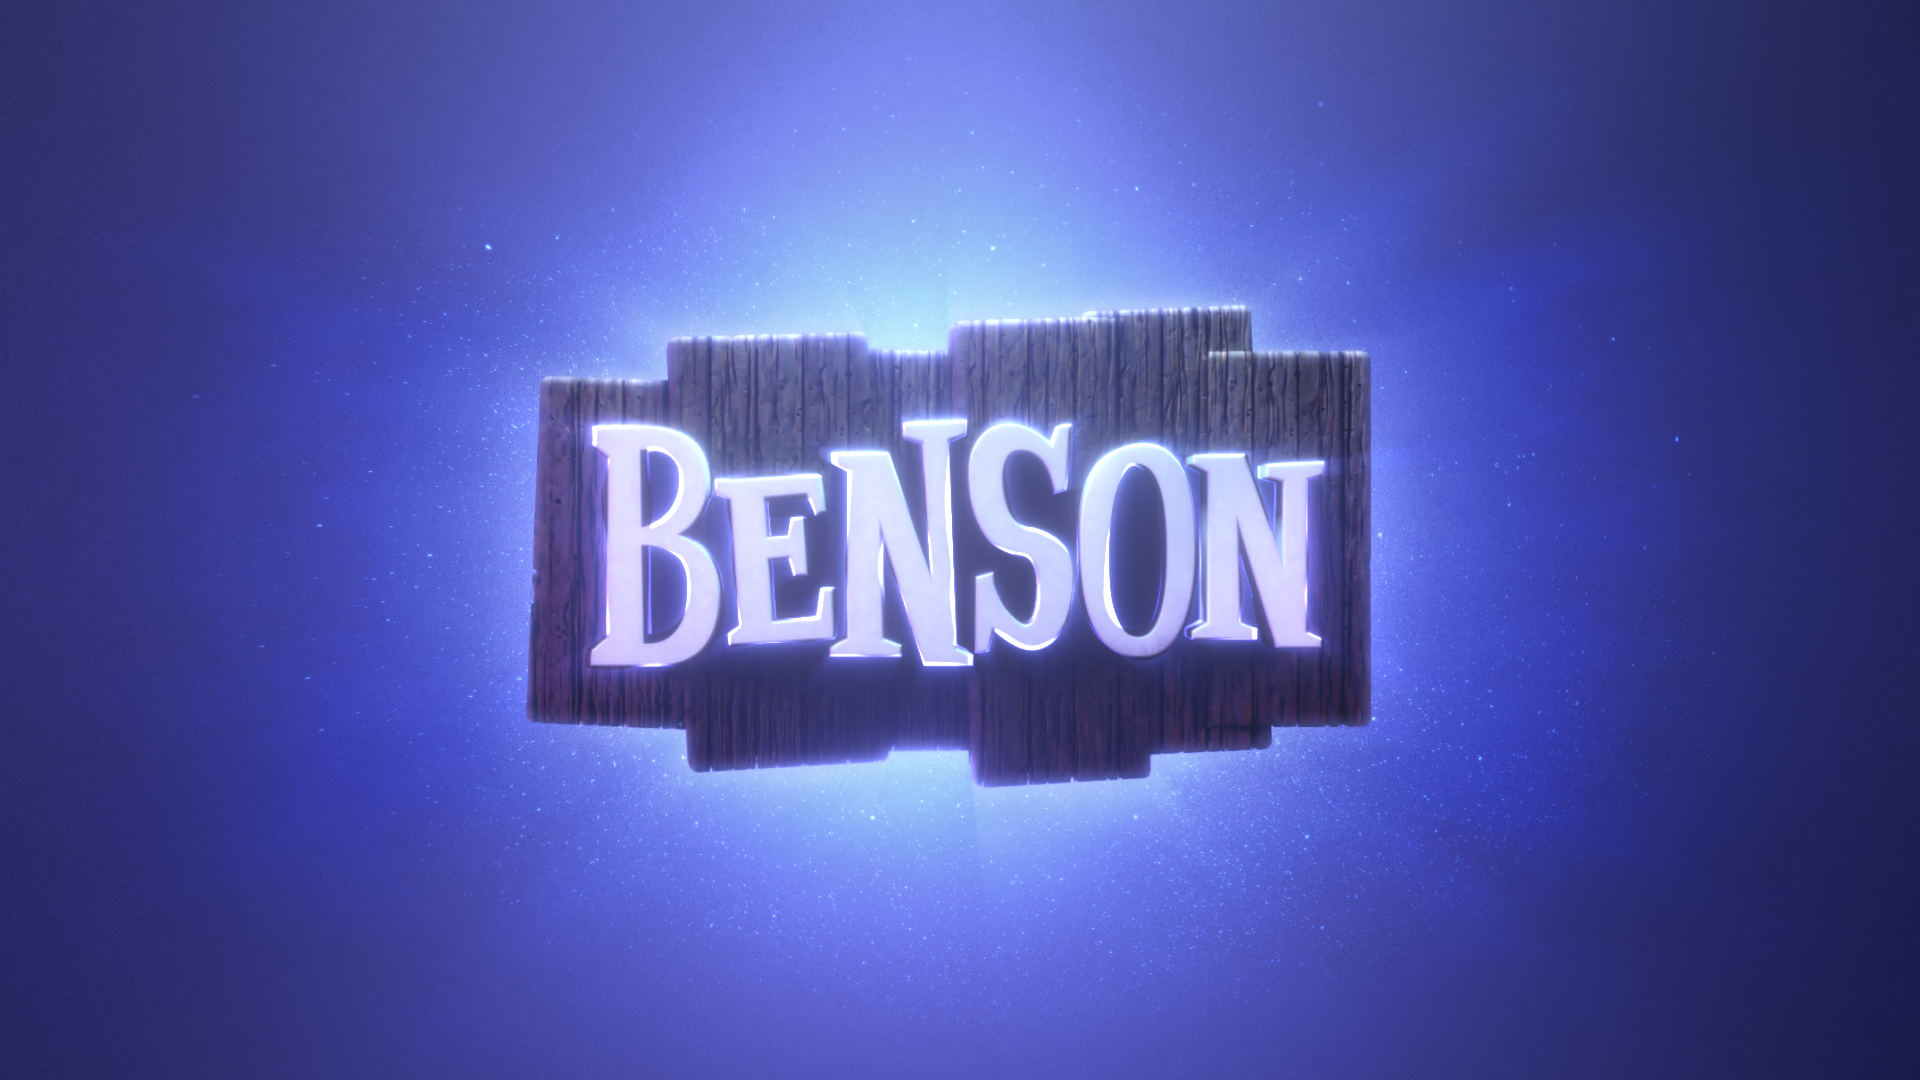 Benson – Short Story Trailer